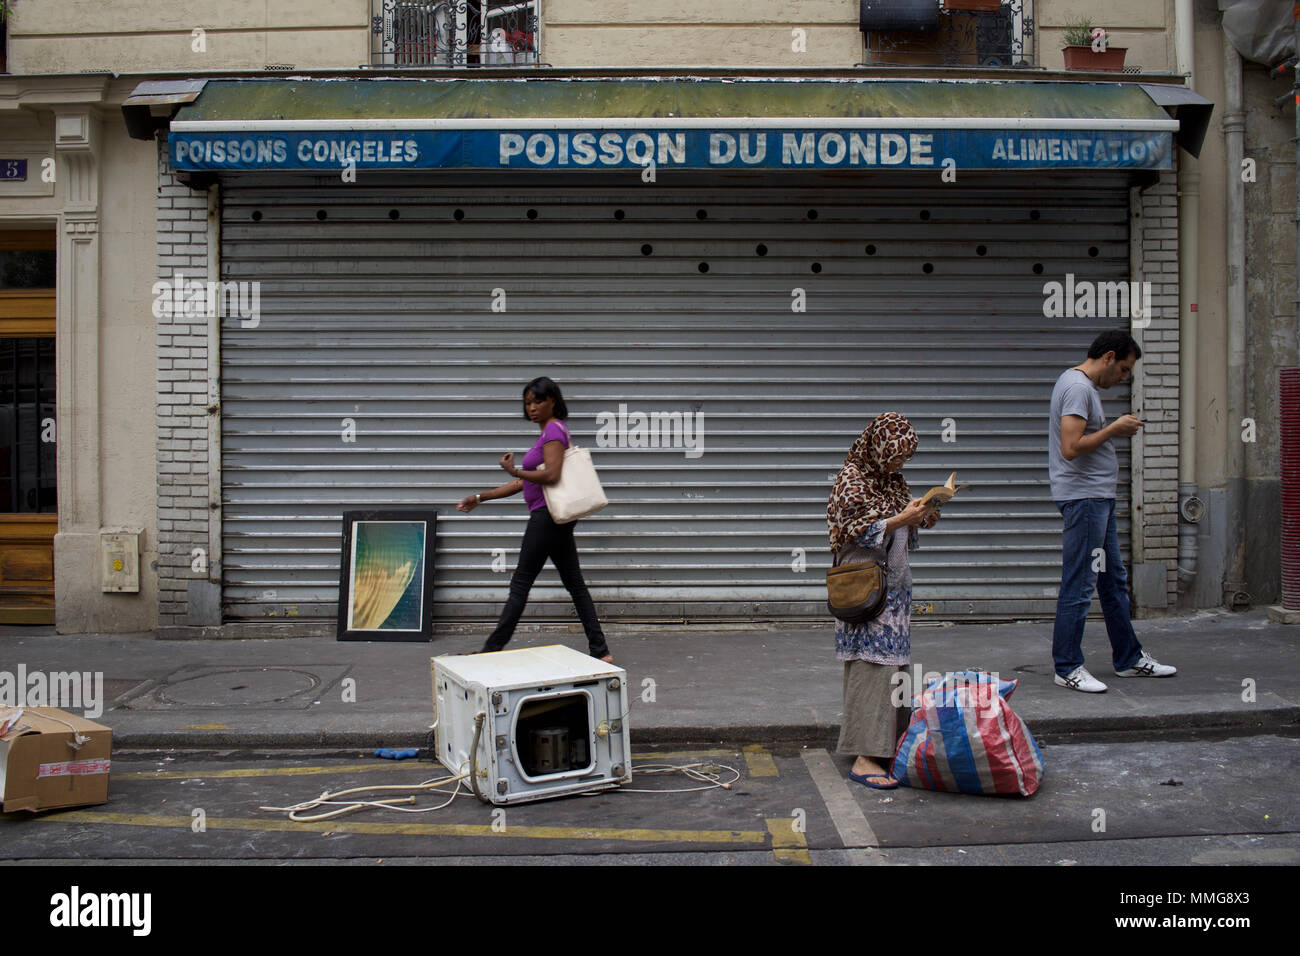 Woman in headscarf finds book among rubbish, Poisson du Monde, Rue de Suez, Goutte d'Or, Paris, France Stock Photo